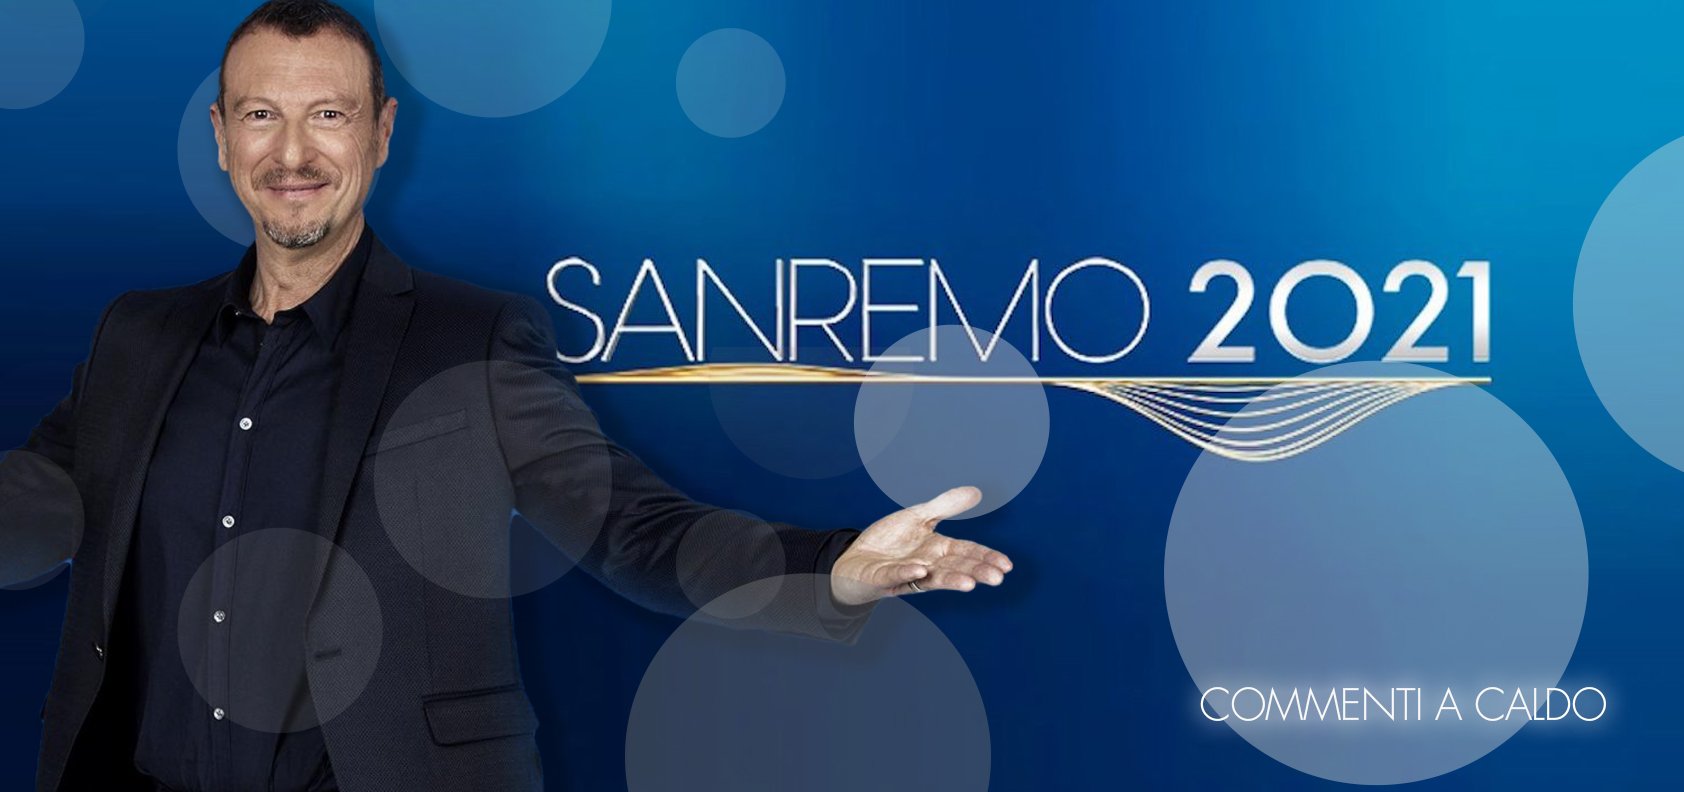 Sanremo 2021, la terza serata: commenti a caldo